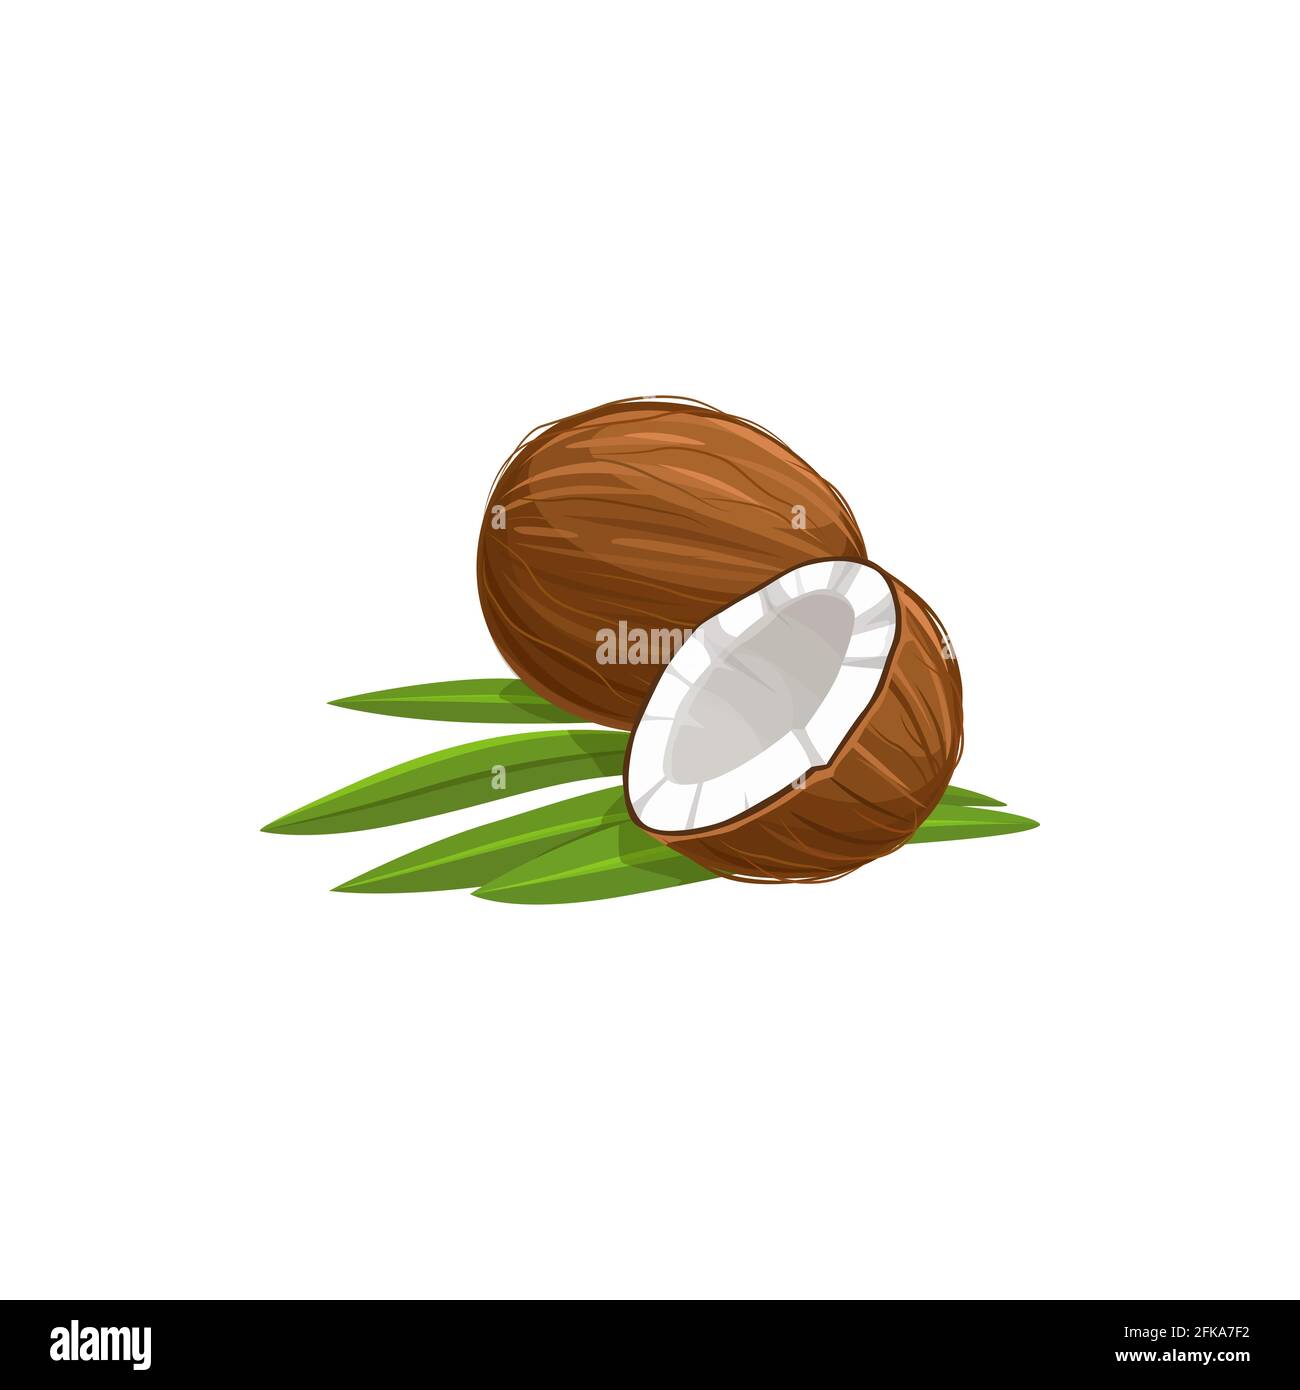 Tropische Kokosnuss isoliert in zwei Hälften geschnitten und ganze Frucht mit grünen Blättern. Vector braun gereifte Nuss weiß im Inneren, exotische Palmenfrucht. Mutter in hartem sh Stock Vektor